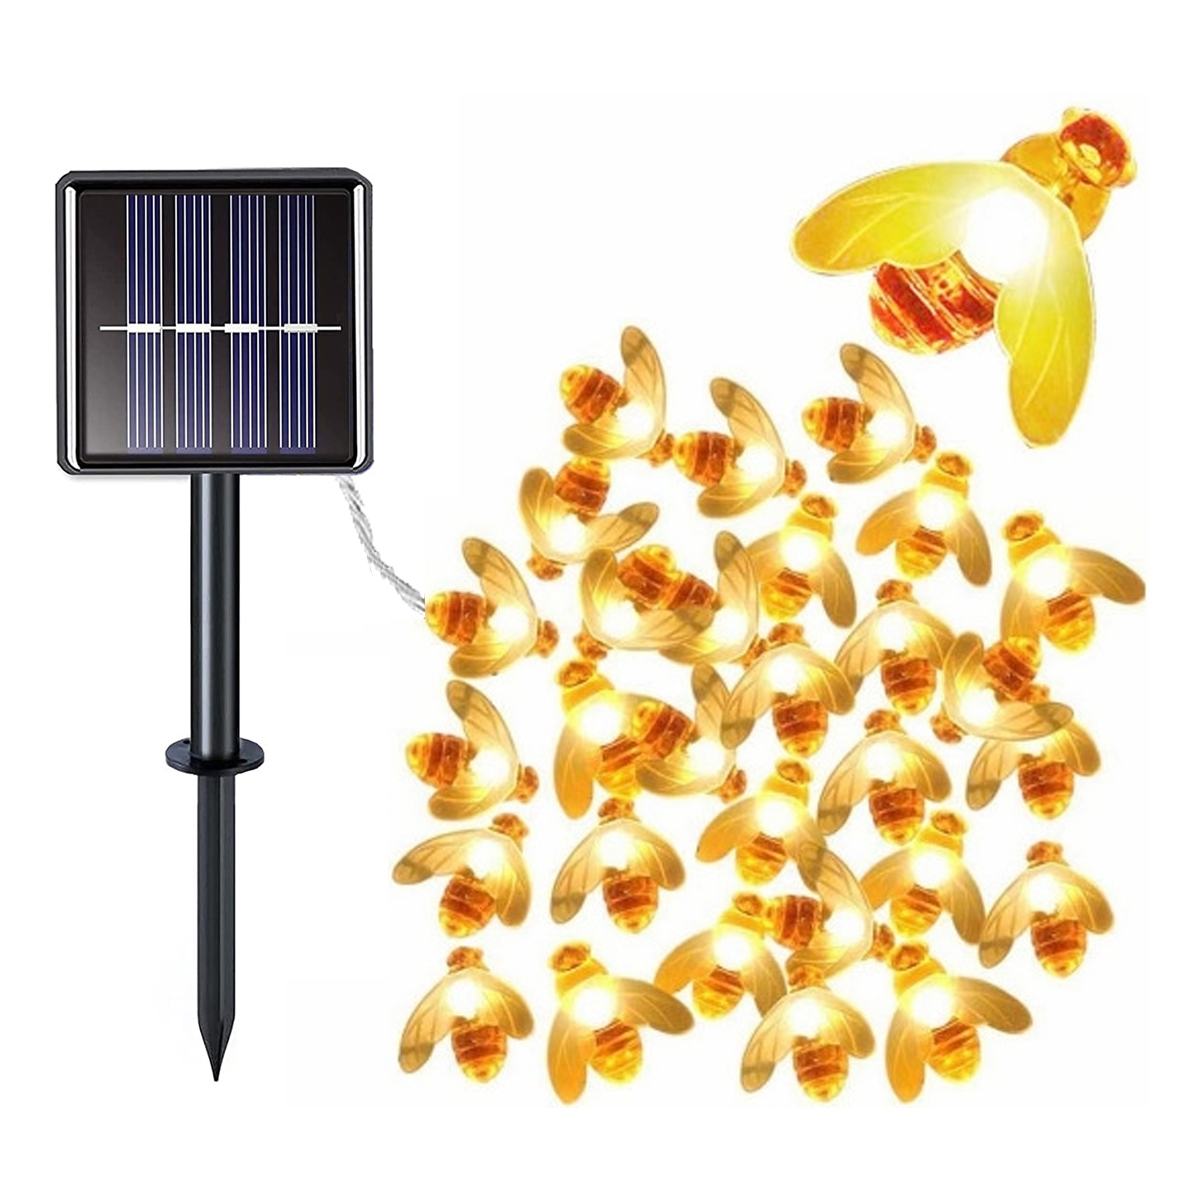 DEDOM Solar-Lichterkette Biene, Bienenleuchten, Solar-Lichterkette, 7m Solar-Lichterketten, Warmweiß Lichter 50 Lichterkette, Biene Kleine